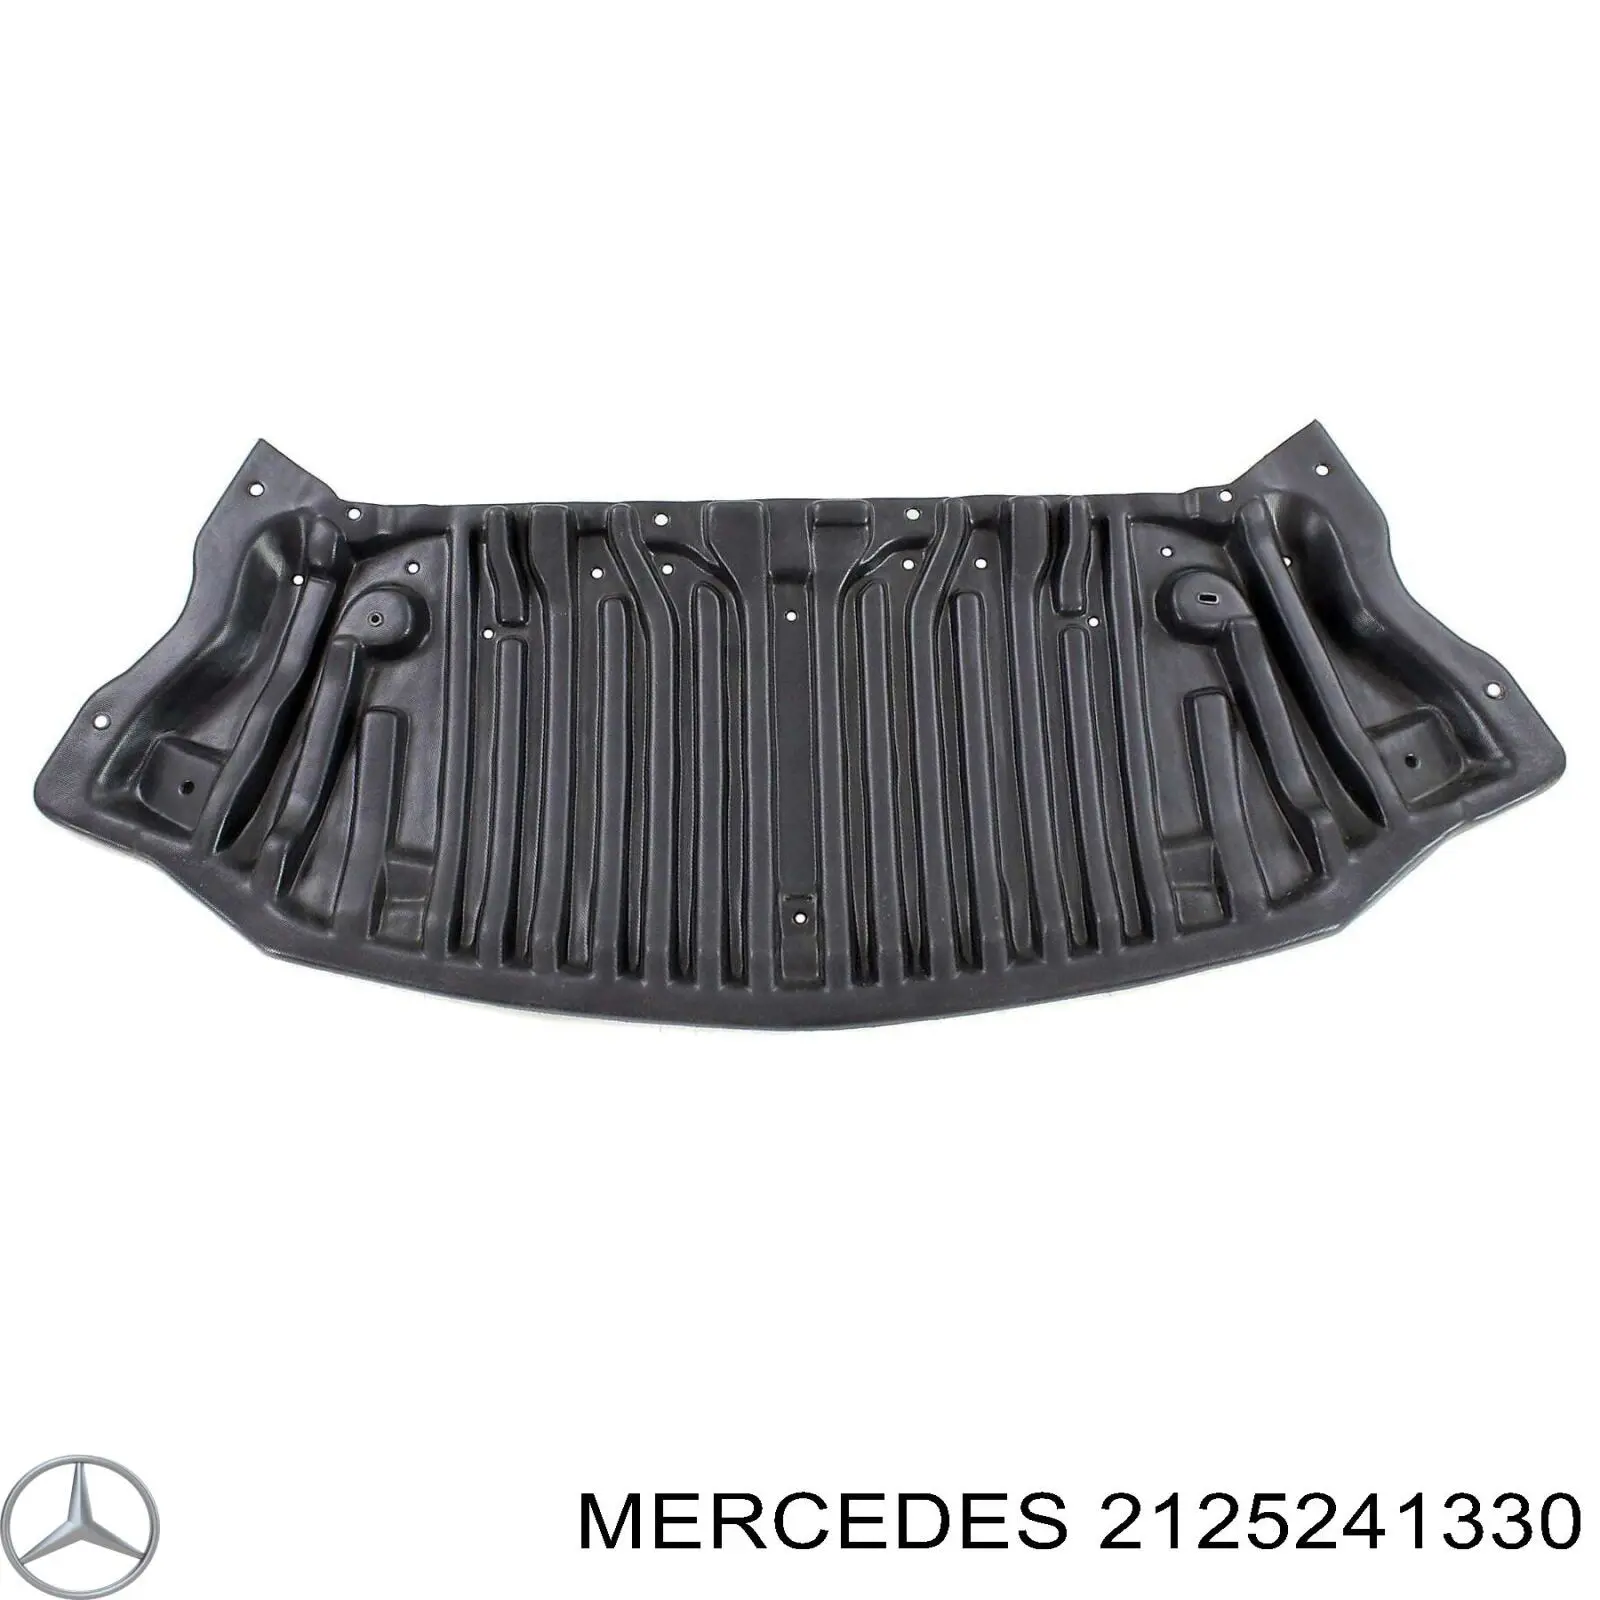 A2125241330 Mercedes защита бампера переднего